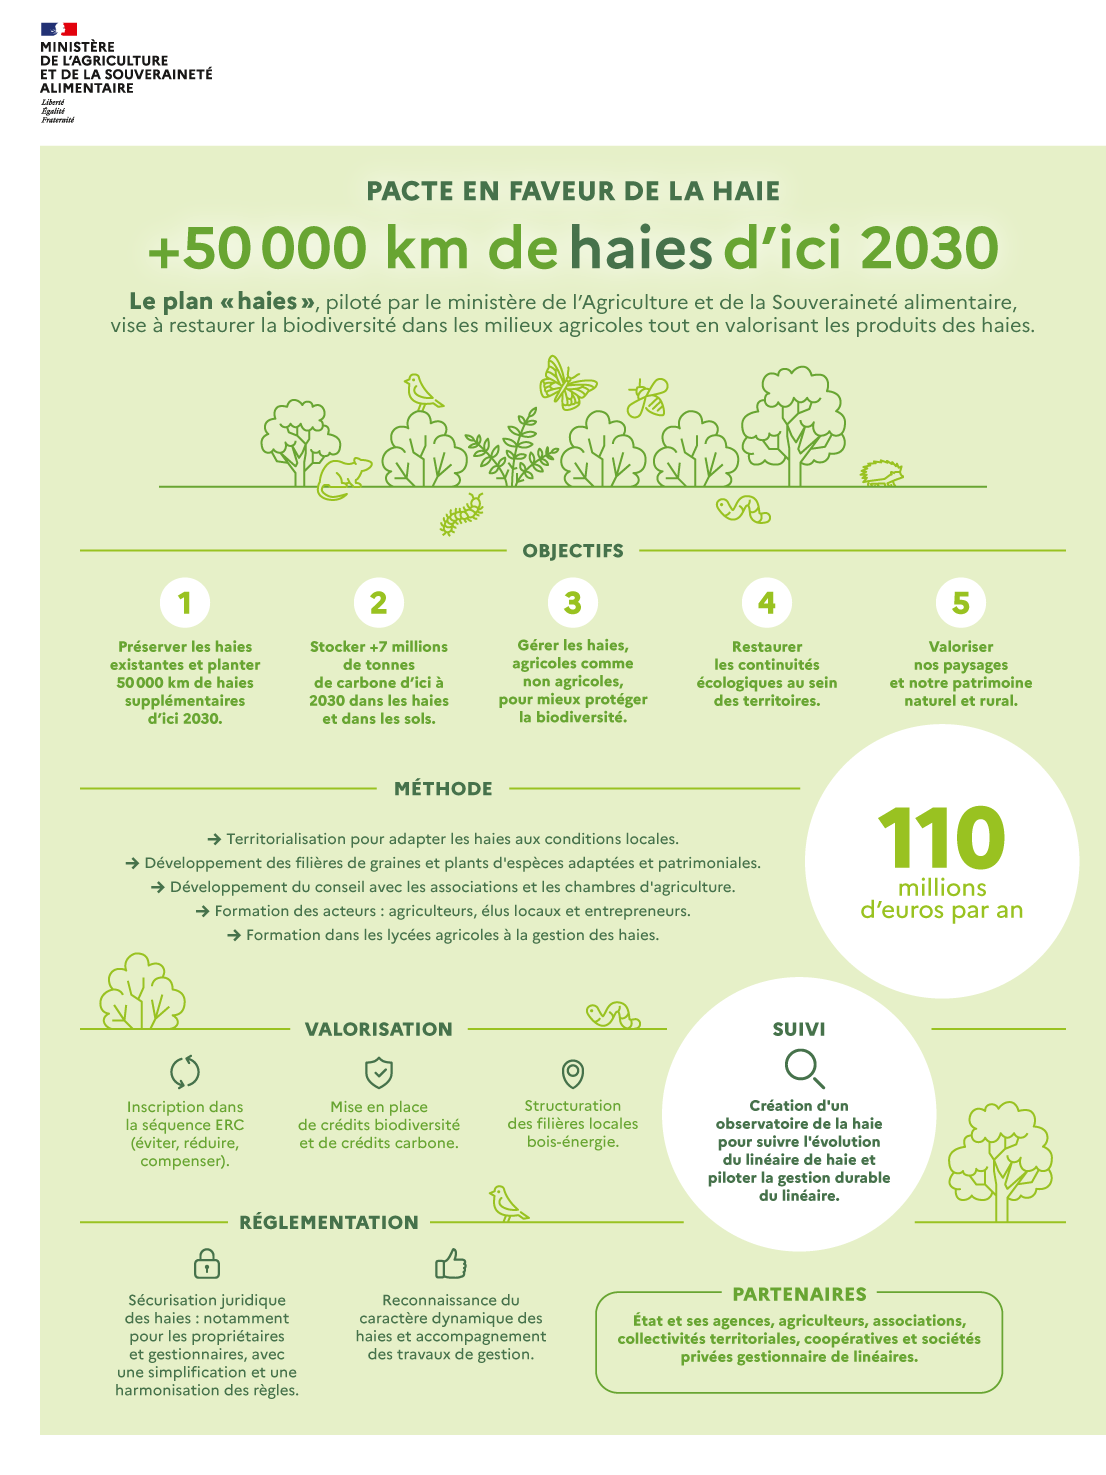 Infographie - Pacte en faveur de la haie | Ministère de l'Agriculture ...